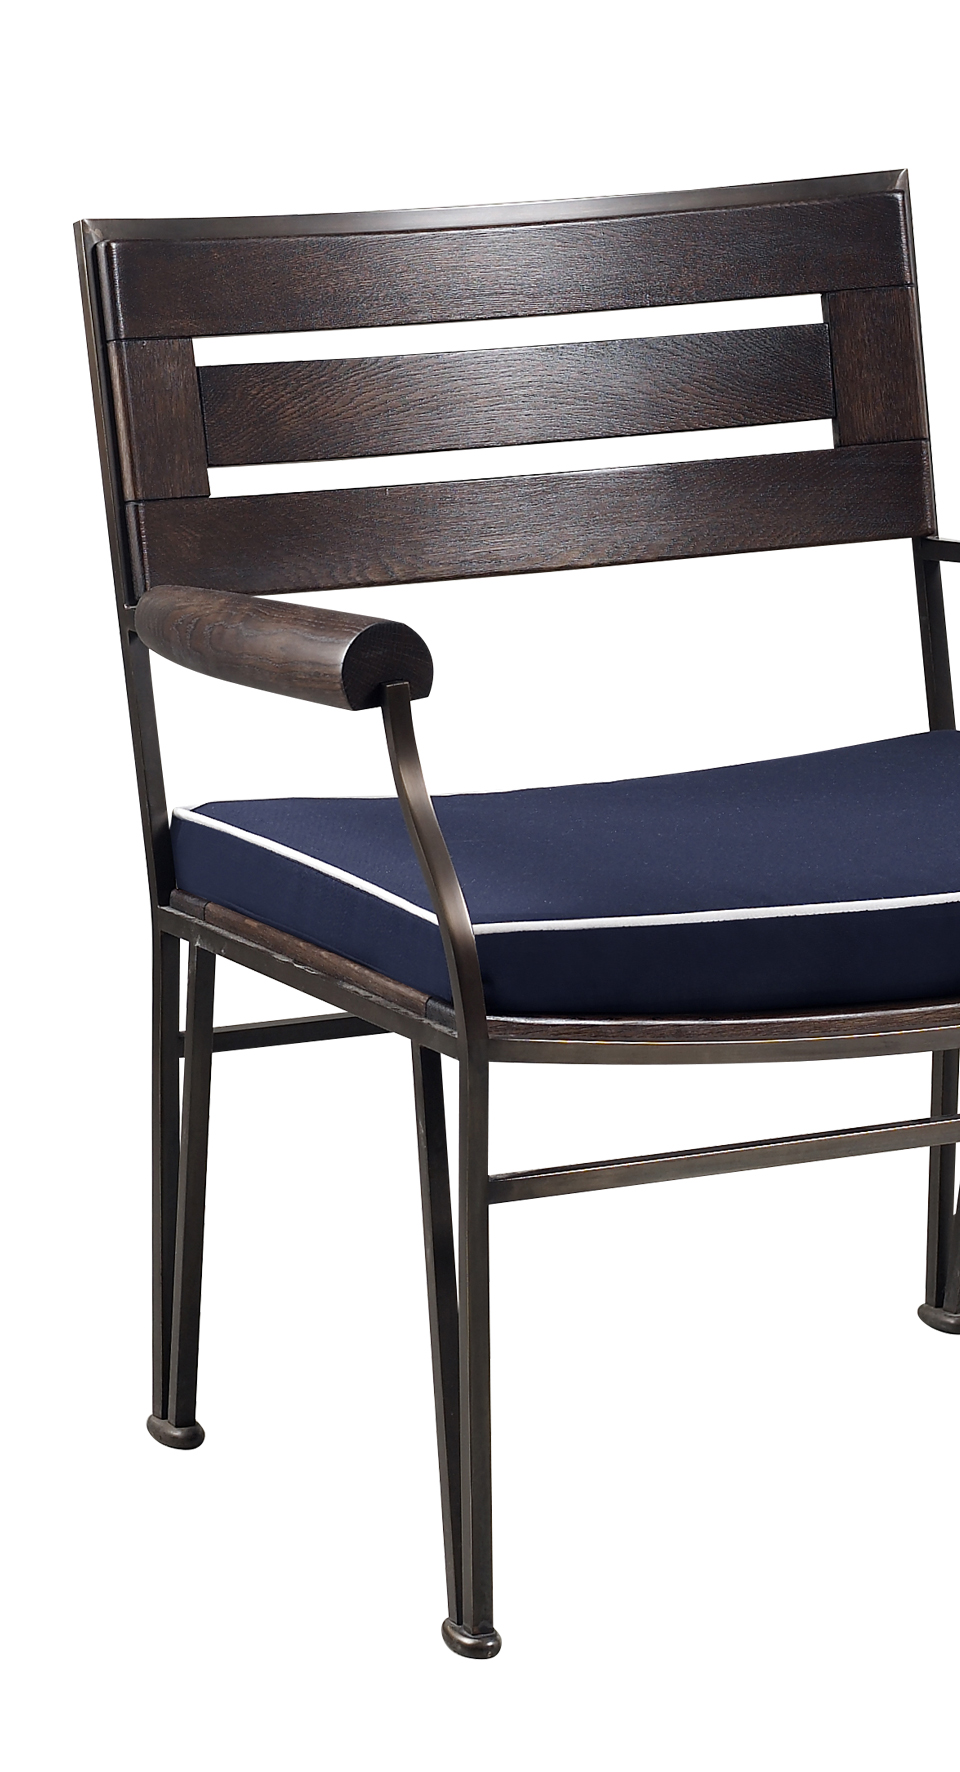 Cernobbio est un fauteuil de jardin, accompagné de son pouf, en bronze et en bois, avec un coussin en tissu. Ce meuble figure dans le catalogue de mobilier de jardin Promemoria | Promemoria